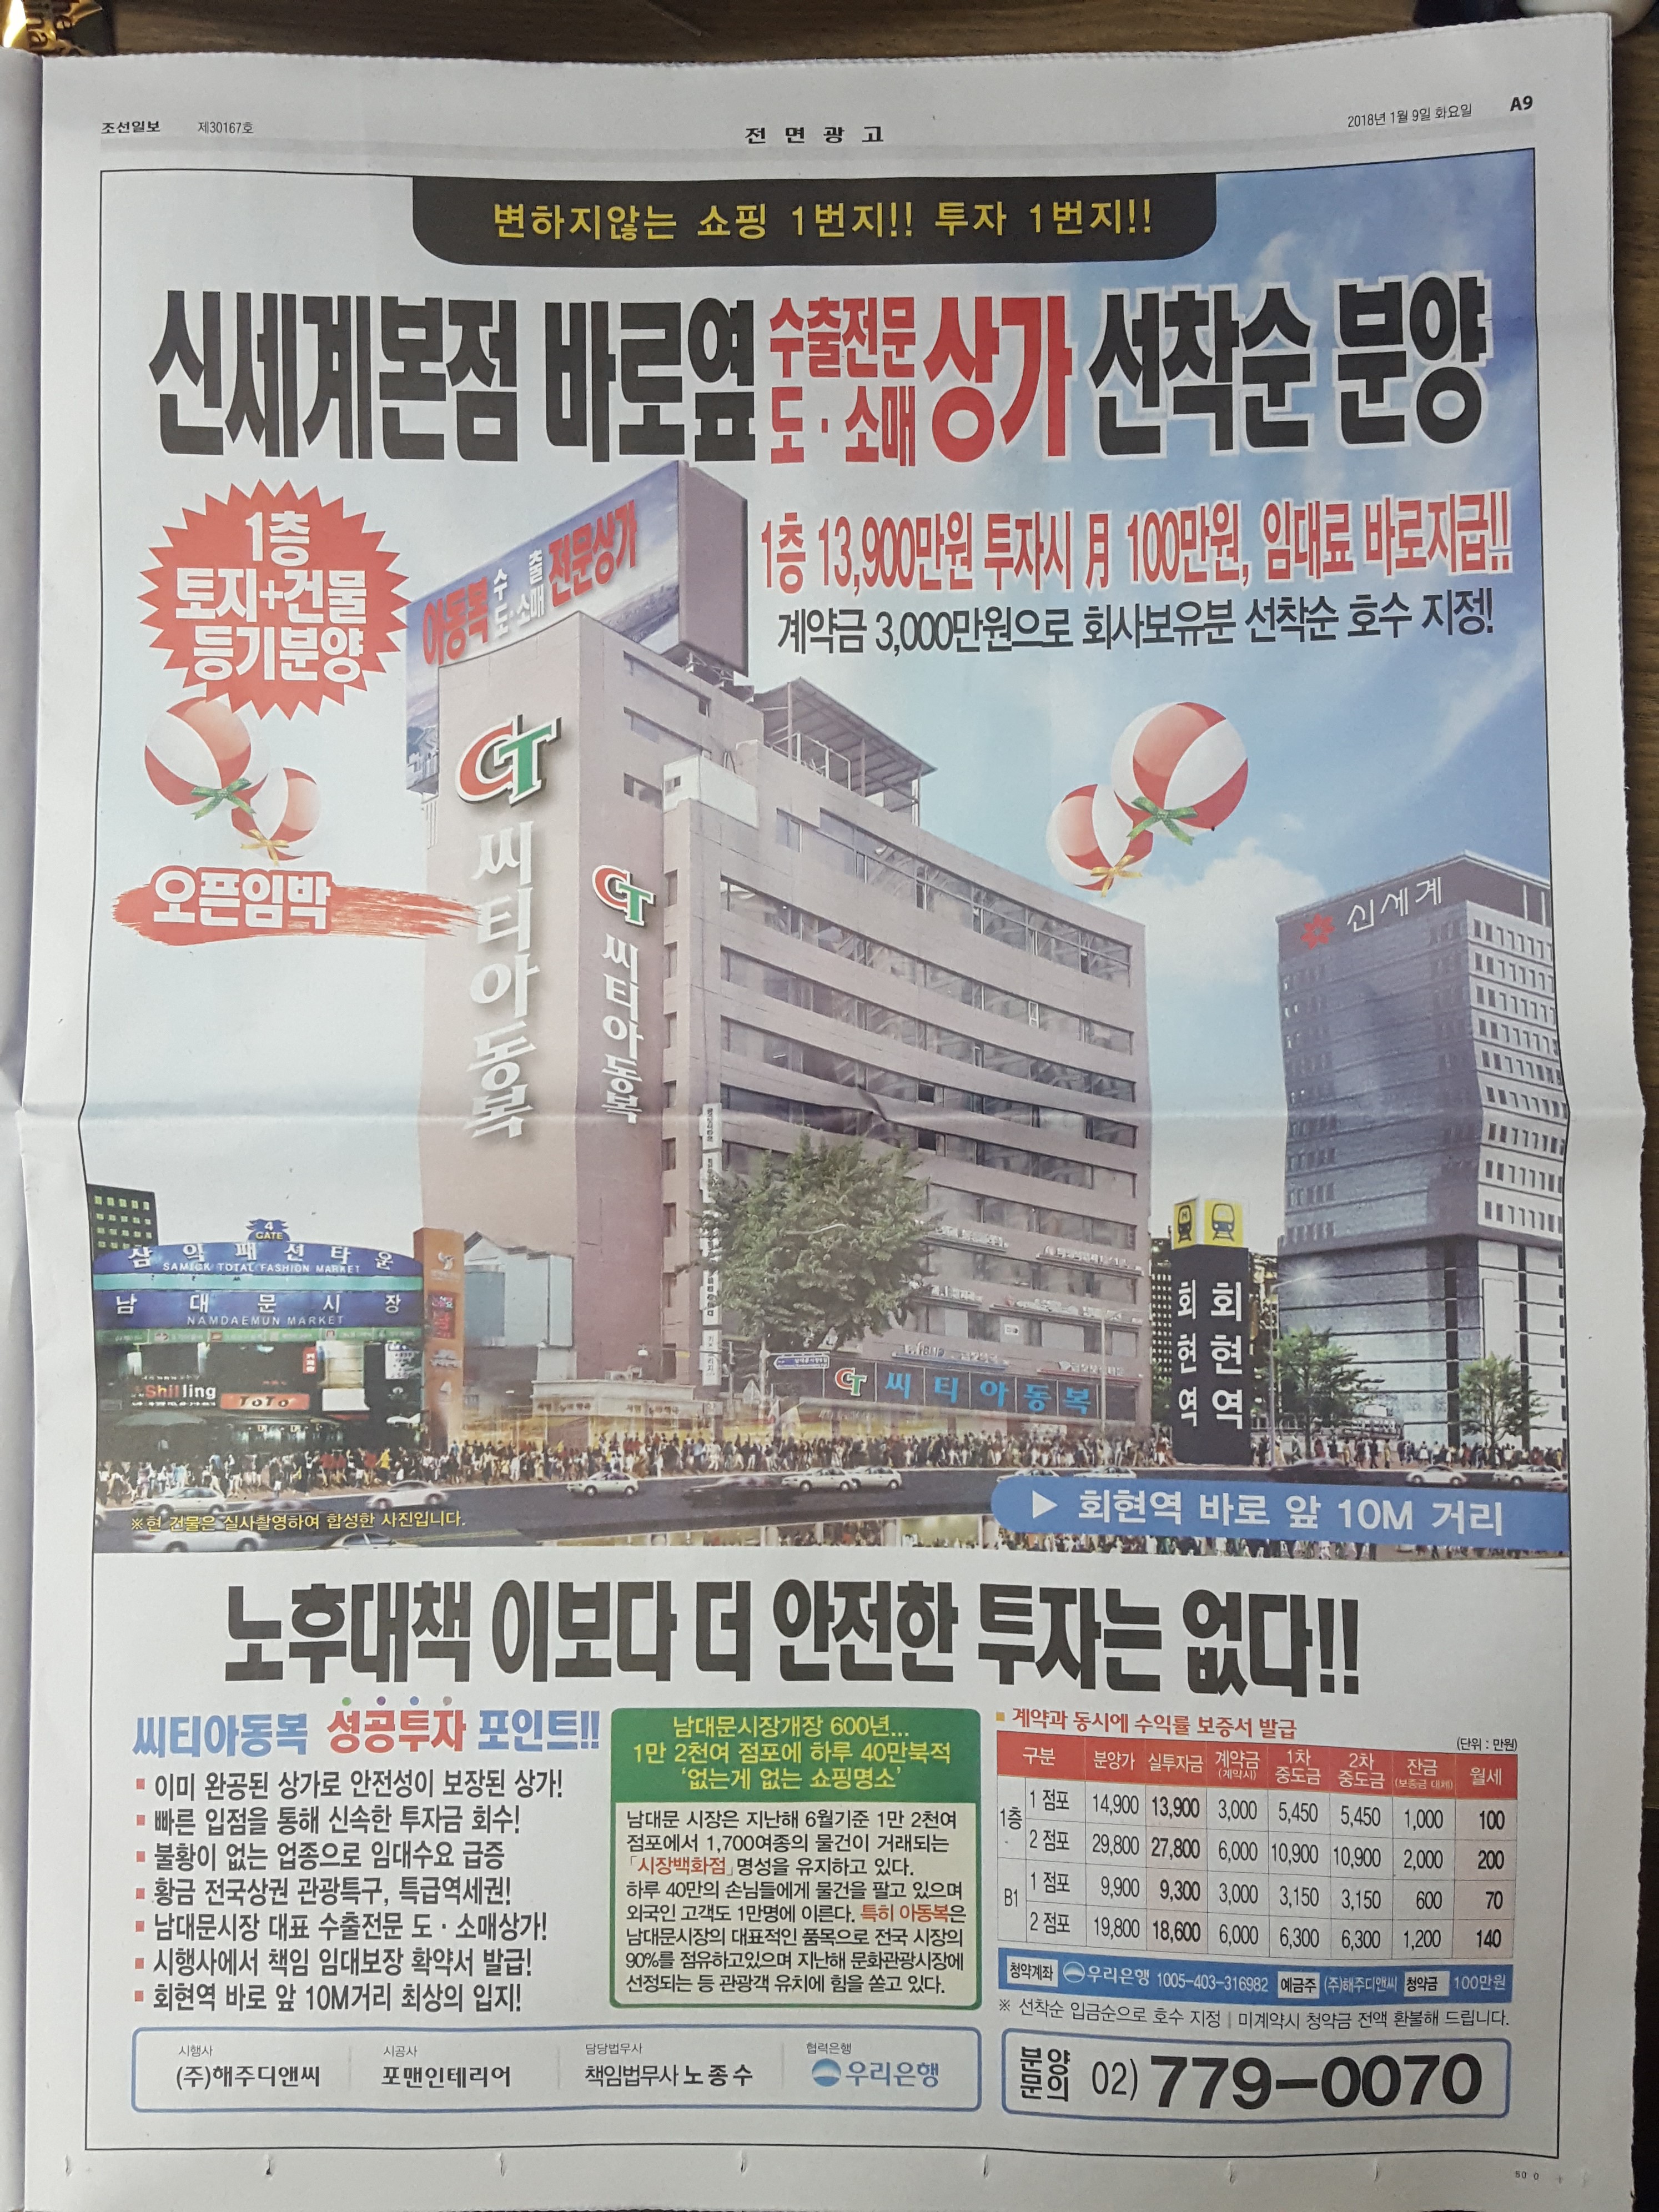 1월 9일 조선일보 A9 회현 씨티아동복 -전면.jpg